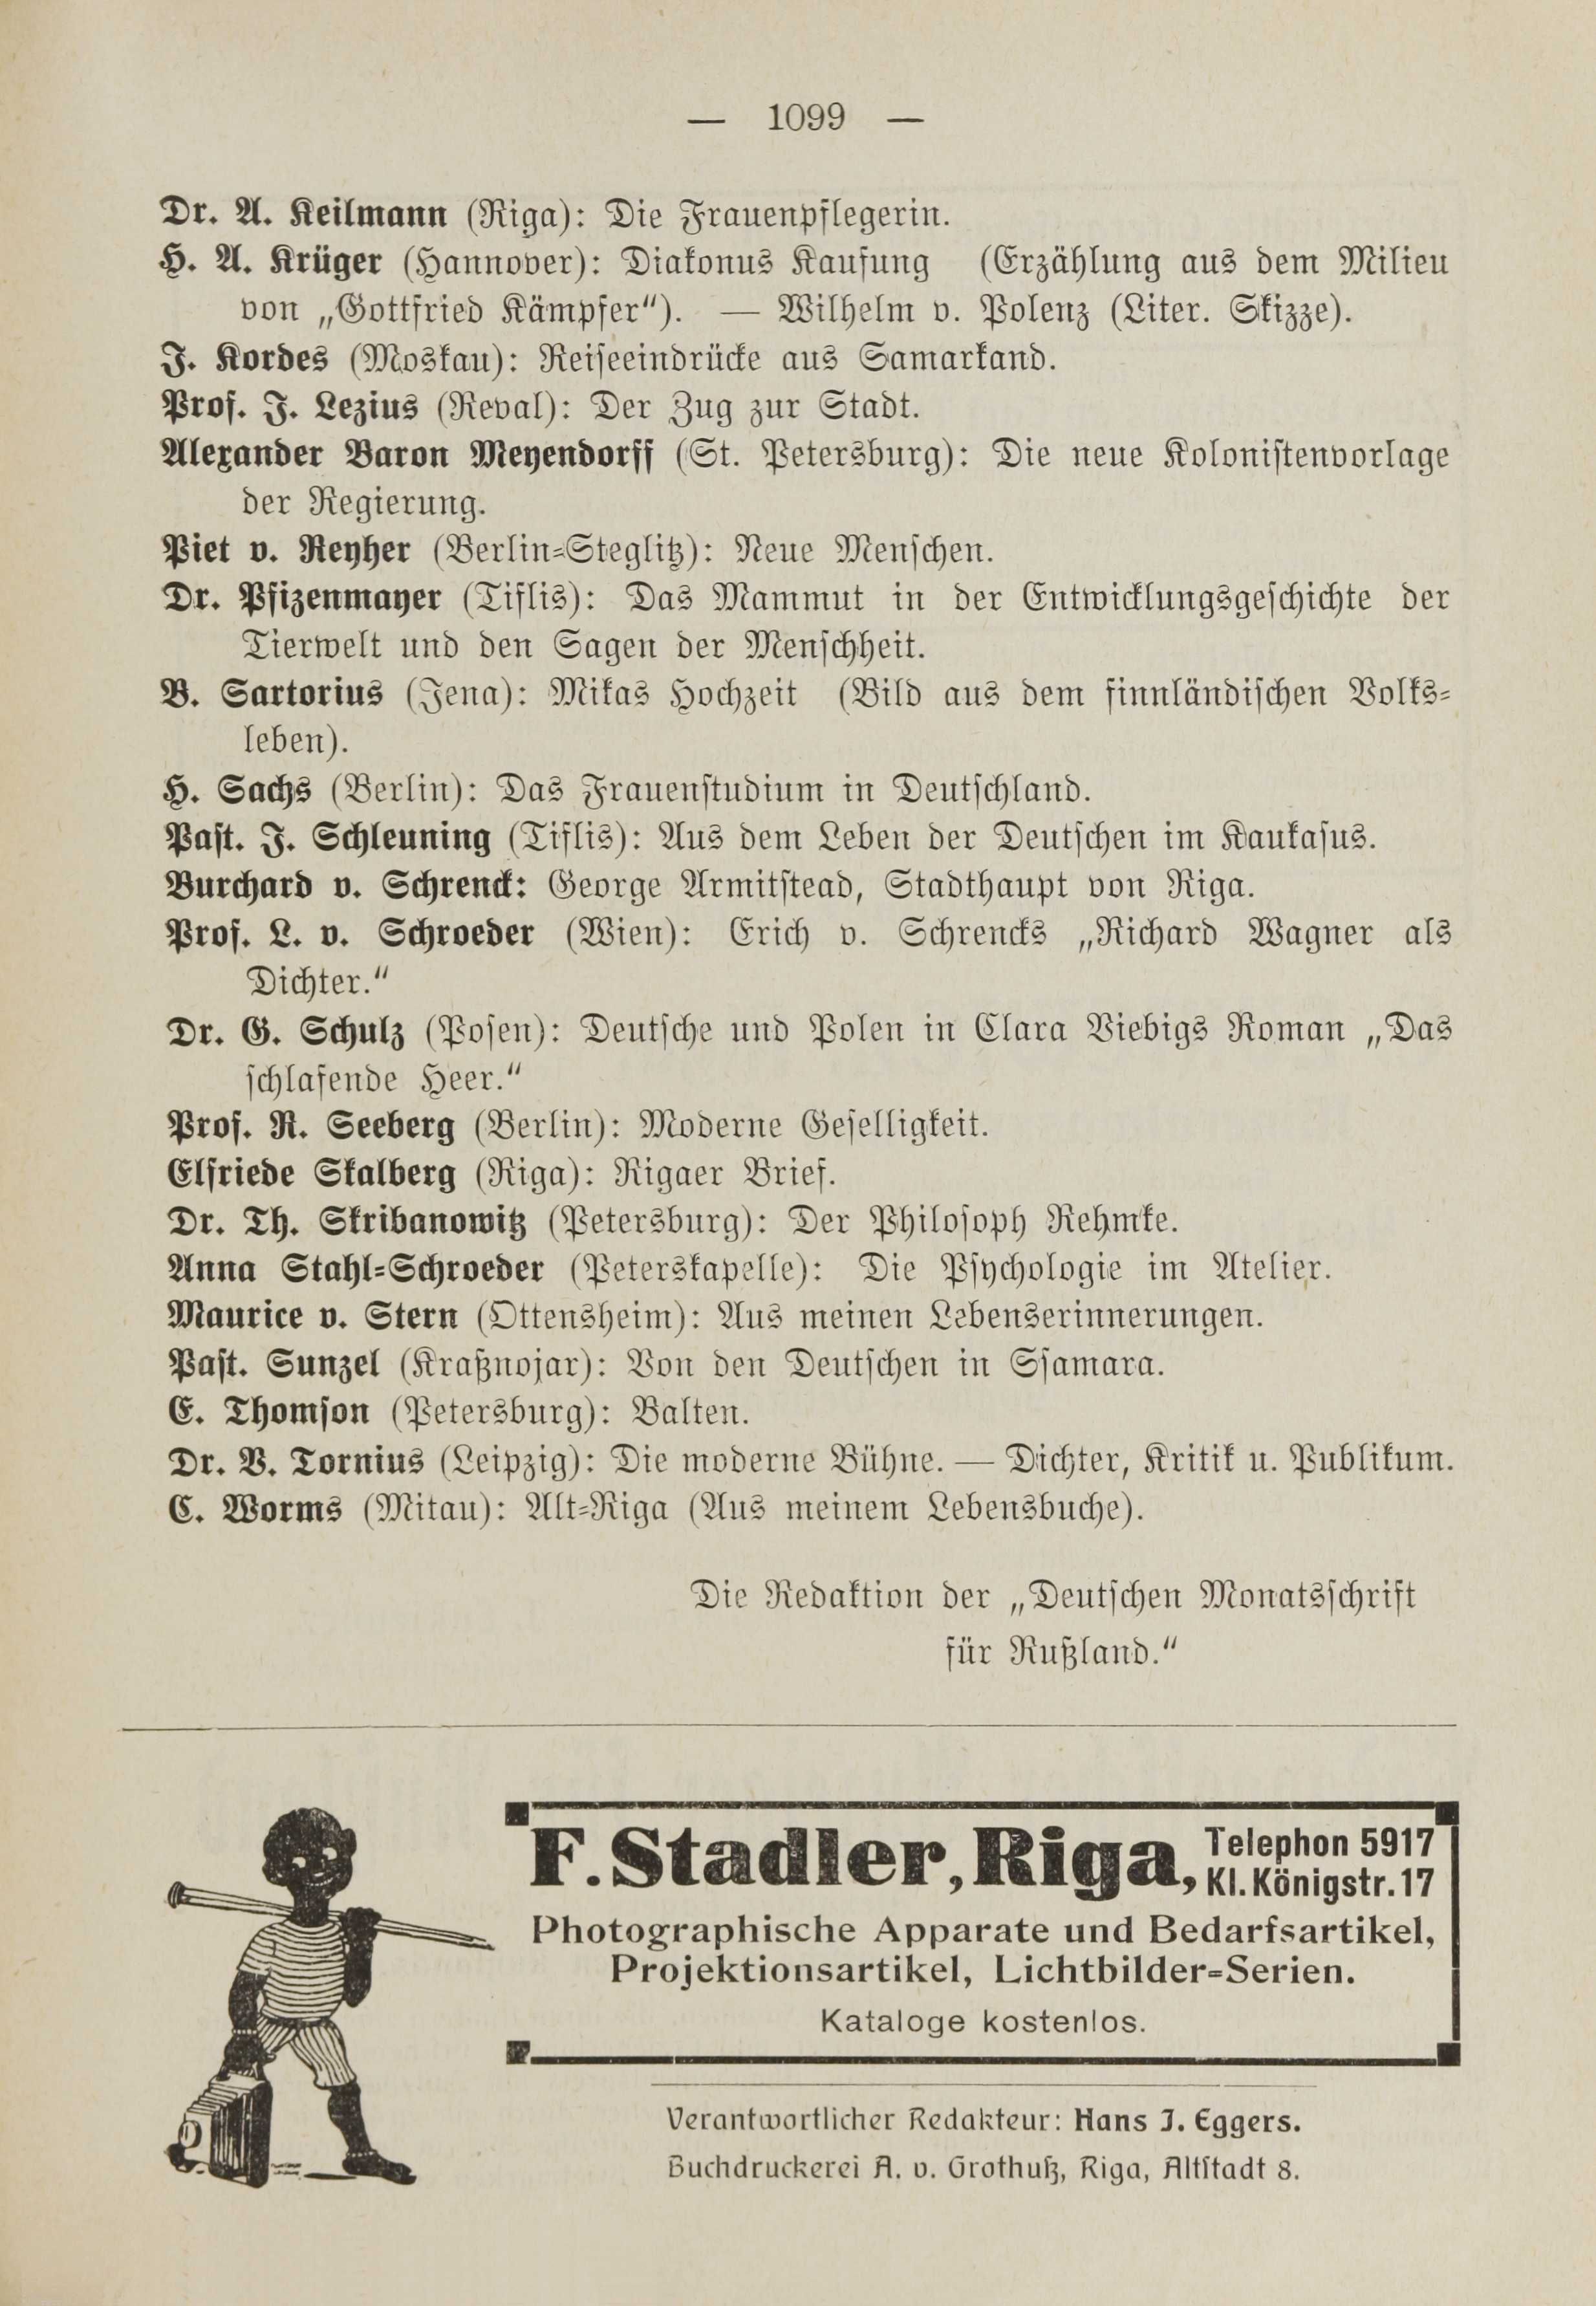 Deutsche Monatsschrift für Russland [1] (1912) | 1107. (1099) Põhitekst